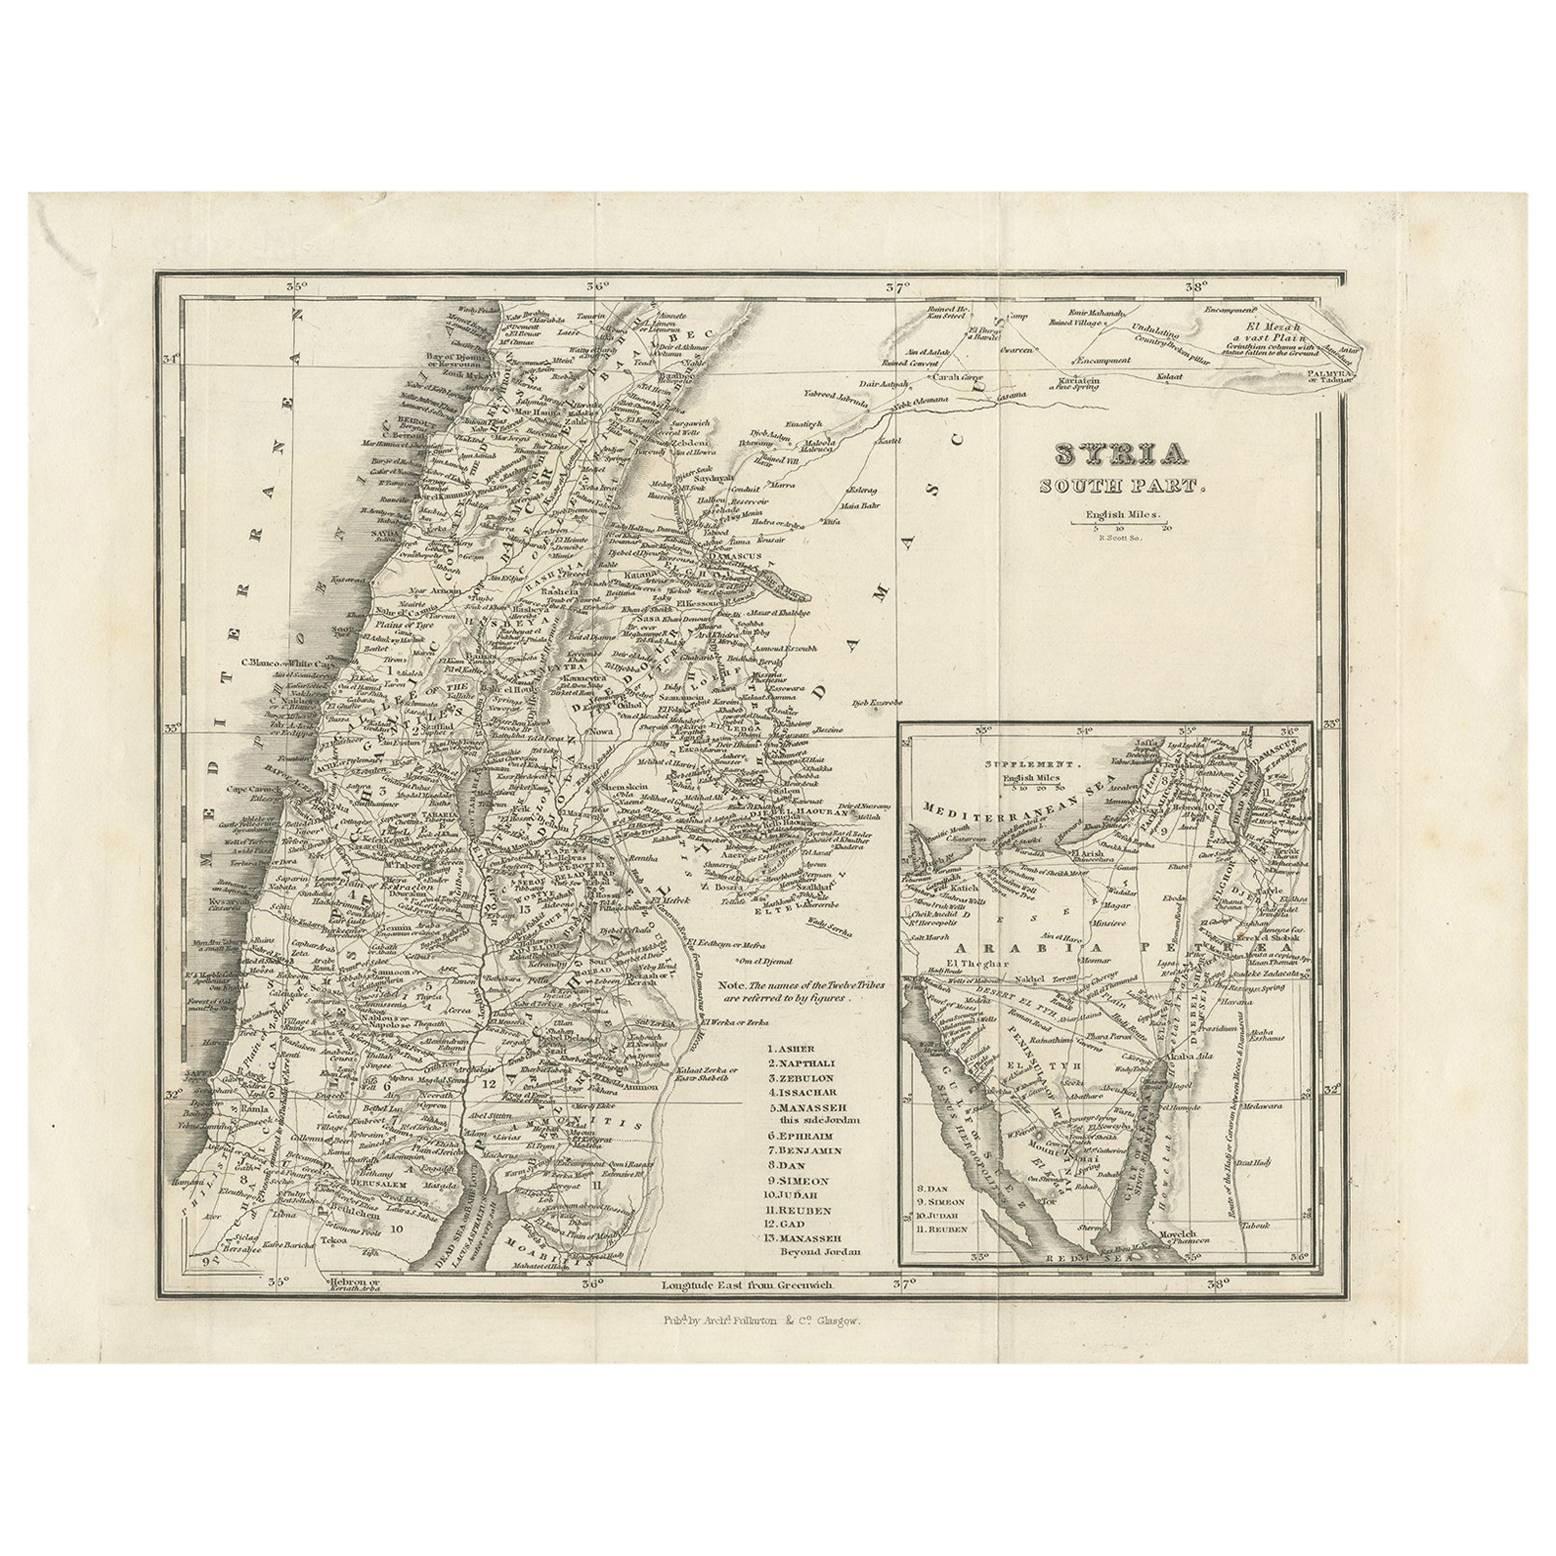 Carte ancienne de la Syrie du Sud par Fullarton & Co, vers 1860